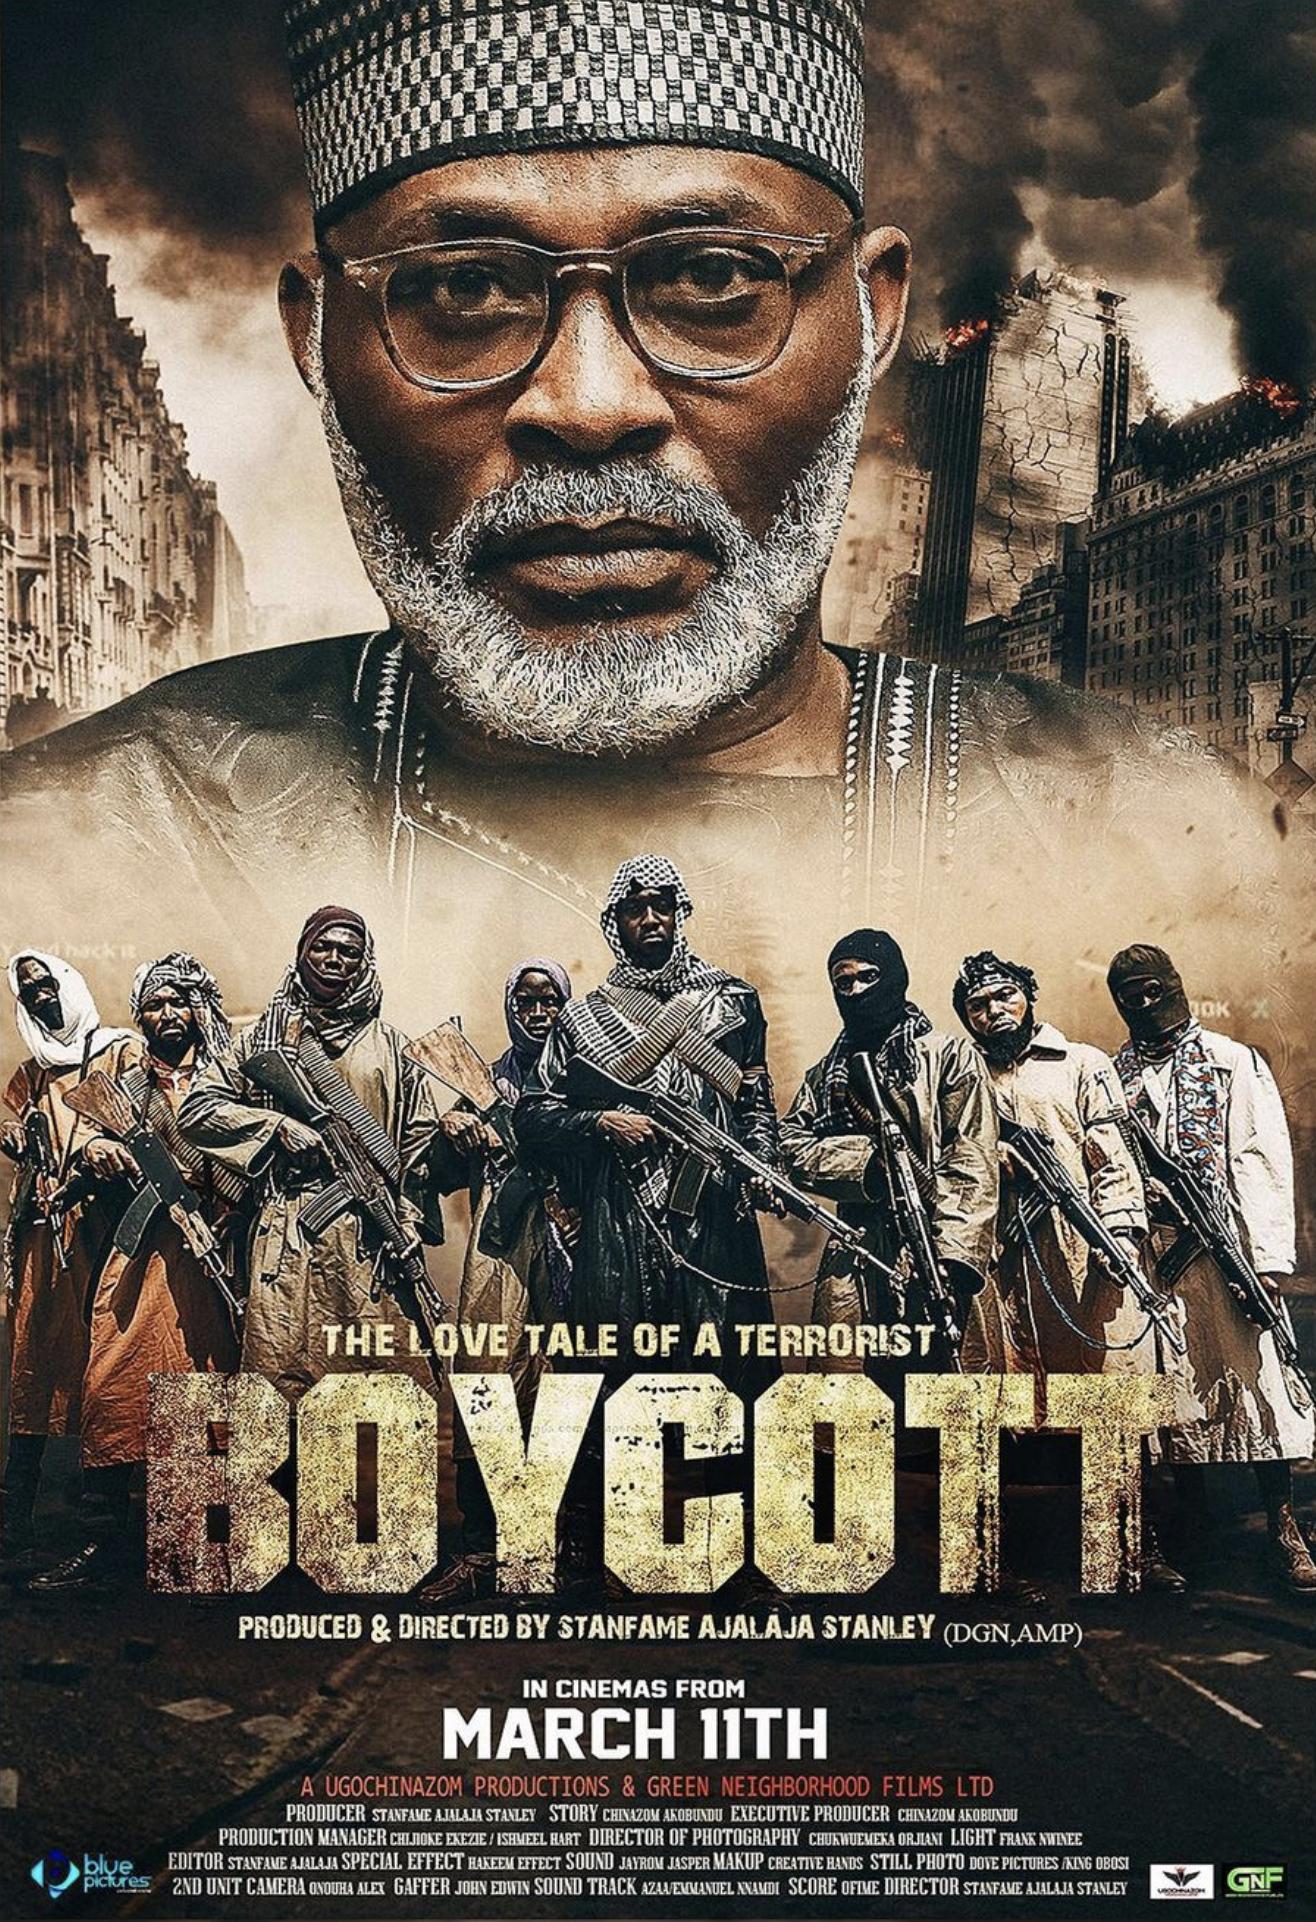 Boycott (Nollywood)